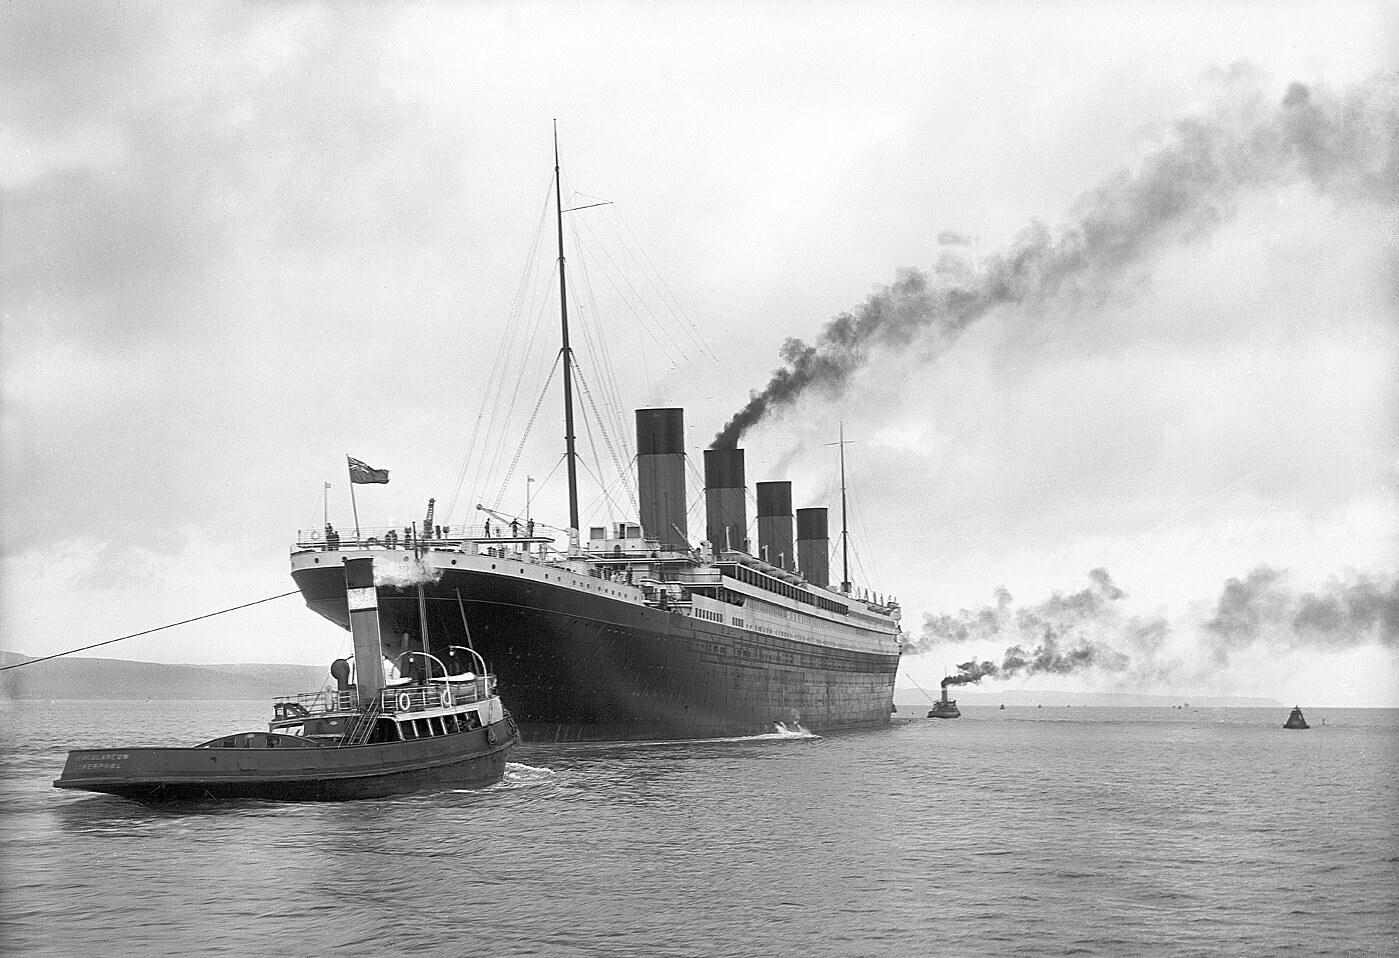 Lodenica, ktorá postavila Titanic, bojuje o prežitie. Rokuje o núdzovom úvere